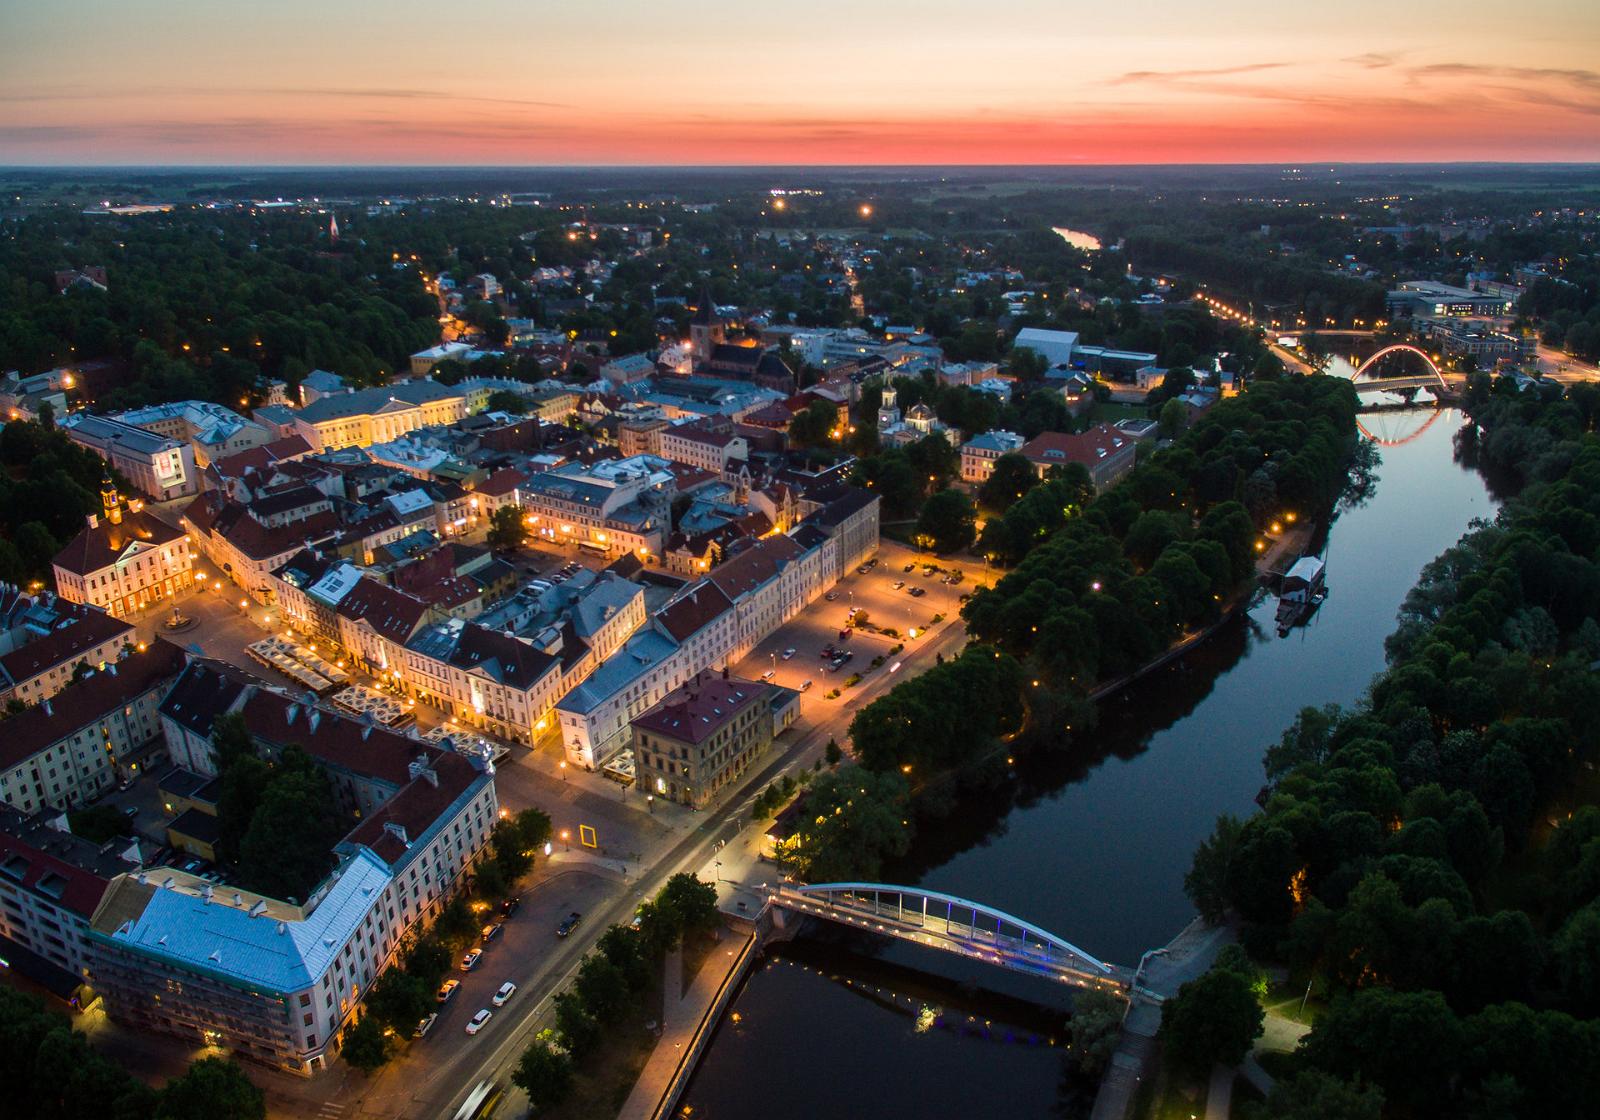 Virtual tour of the city of Tartu: Tartu and sunset